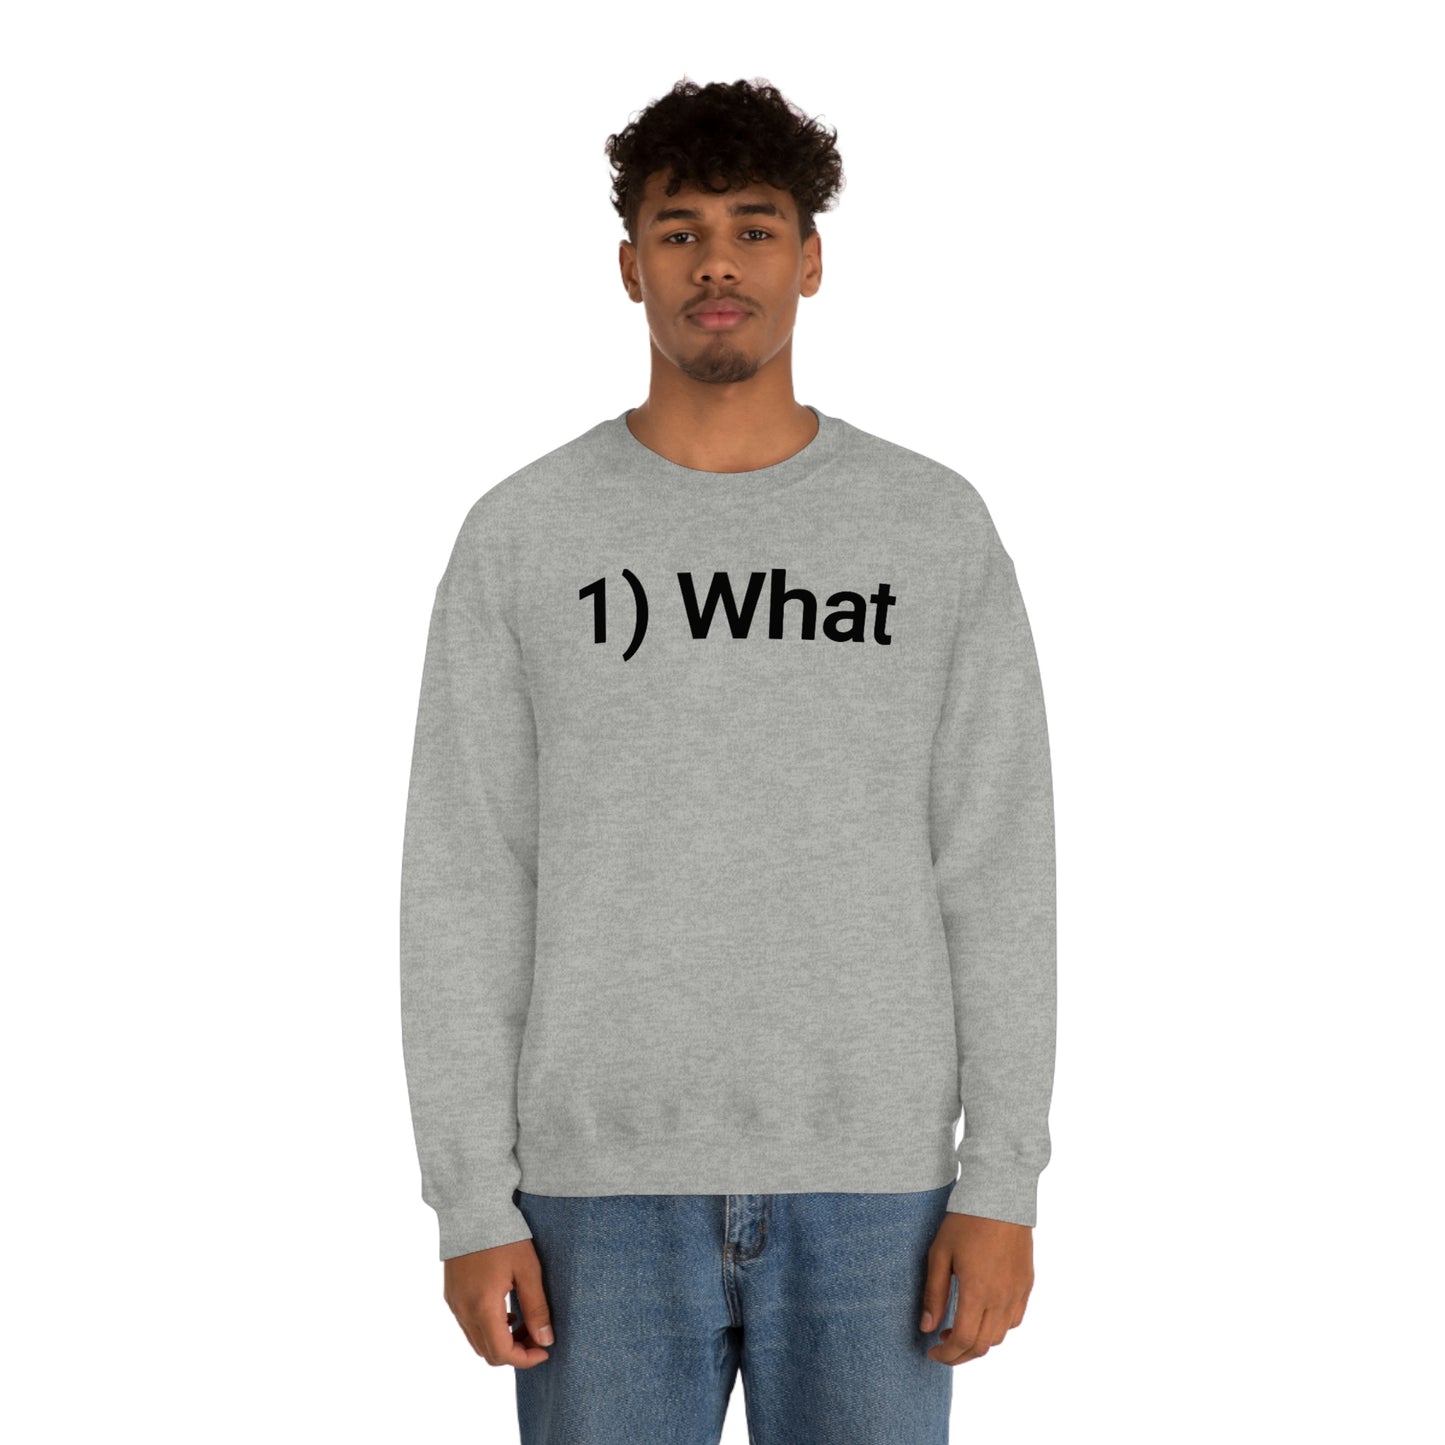 SBF 1) What Crewneck Sweatshirt